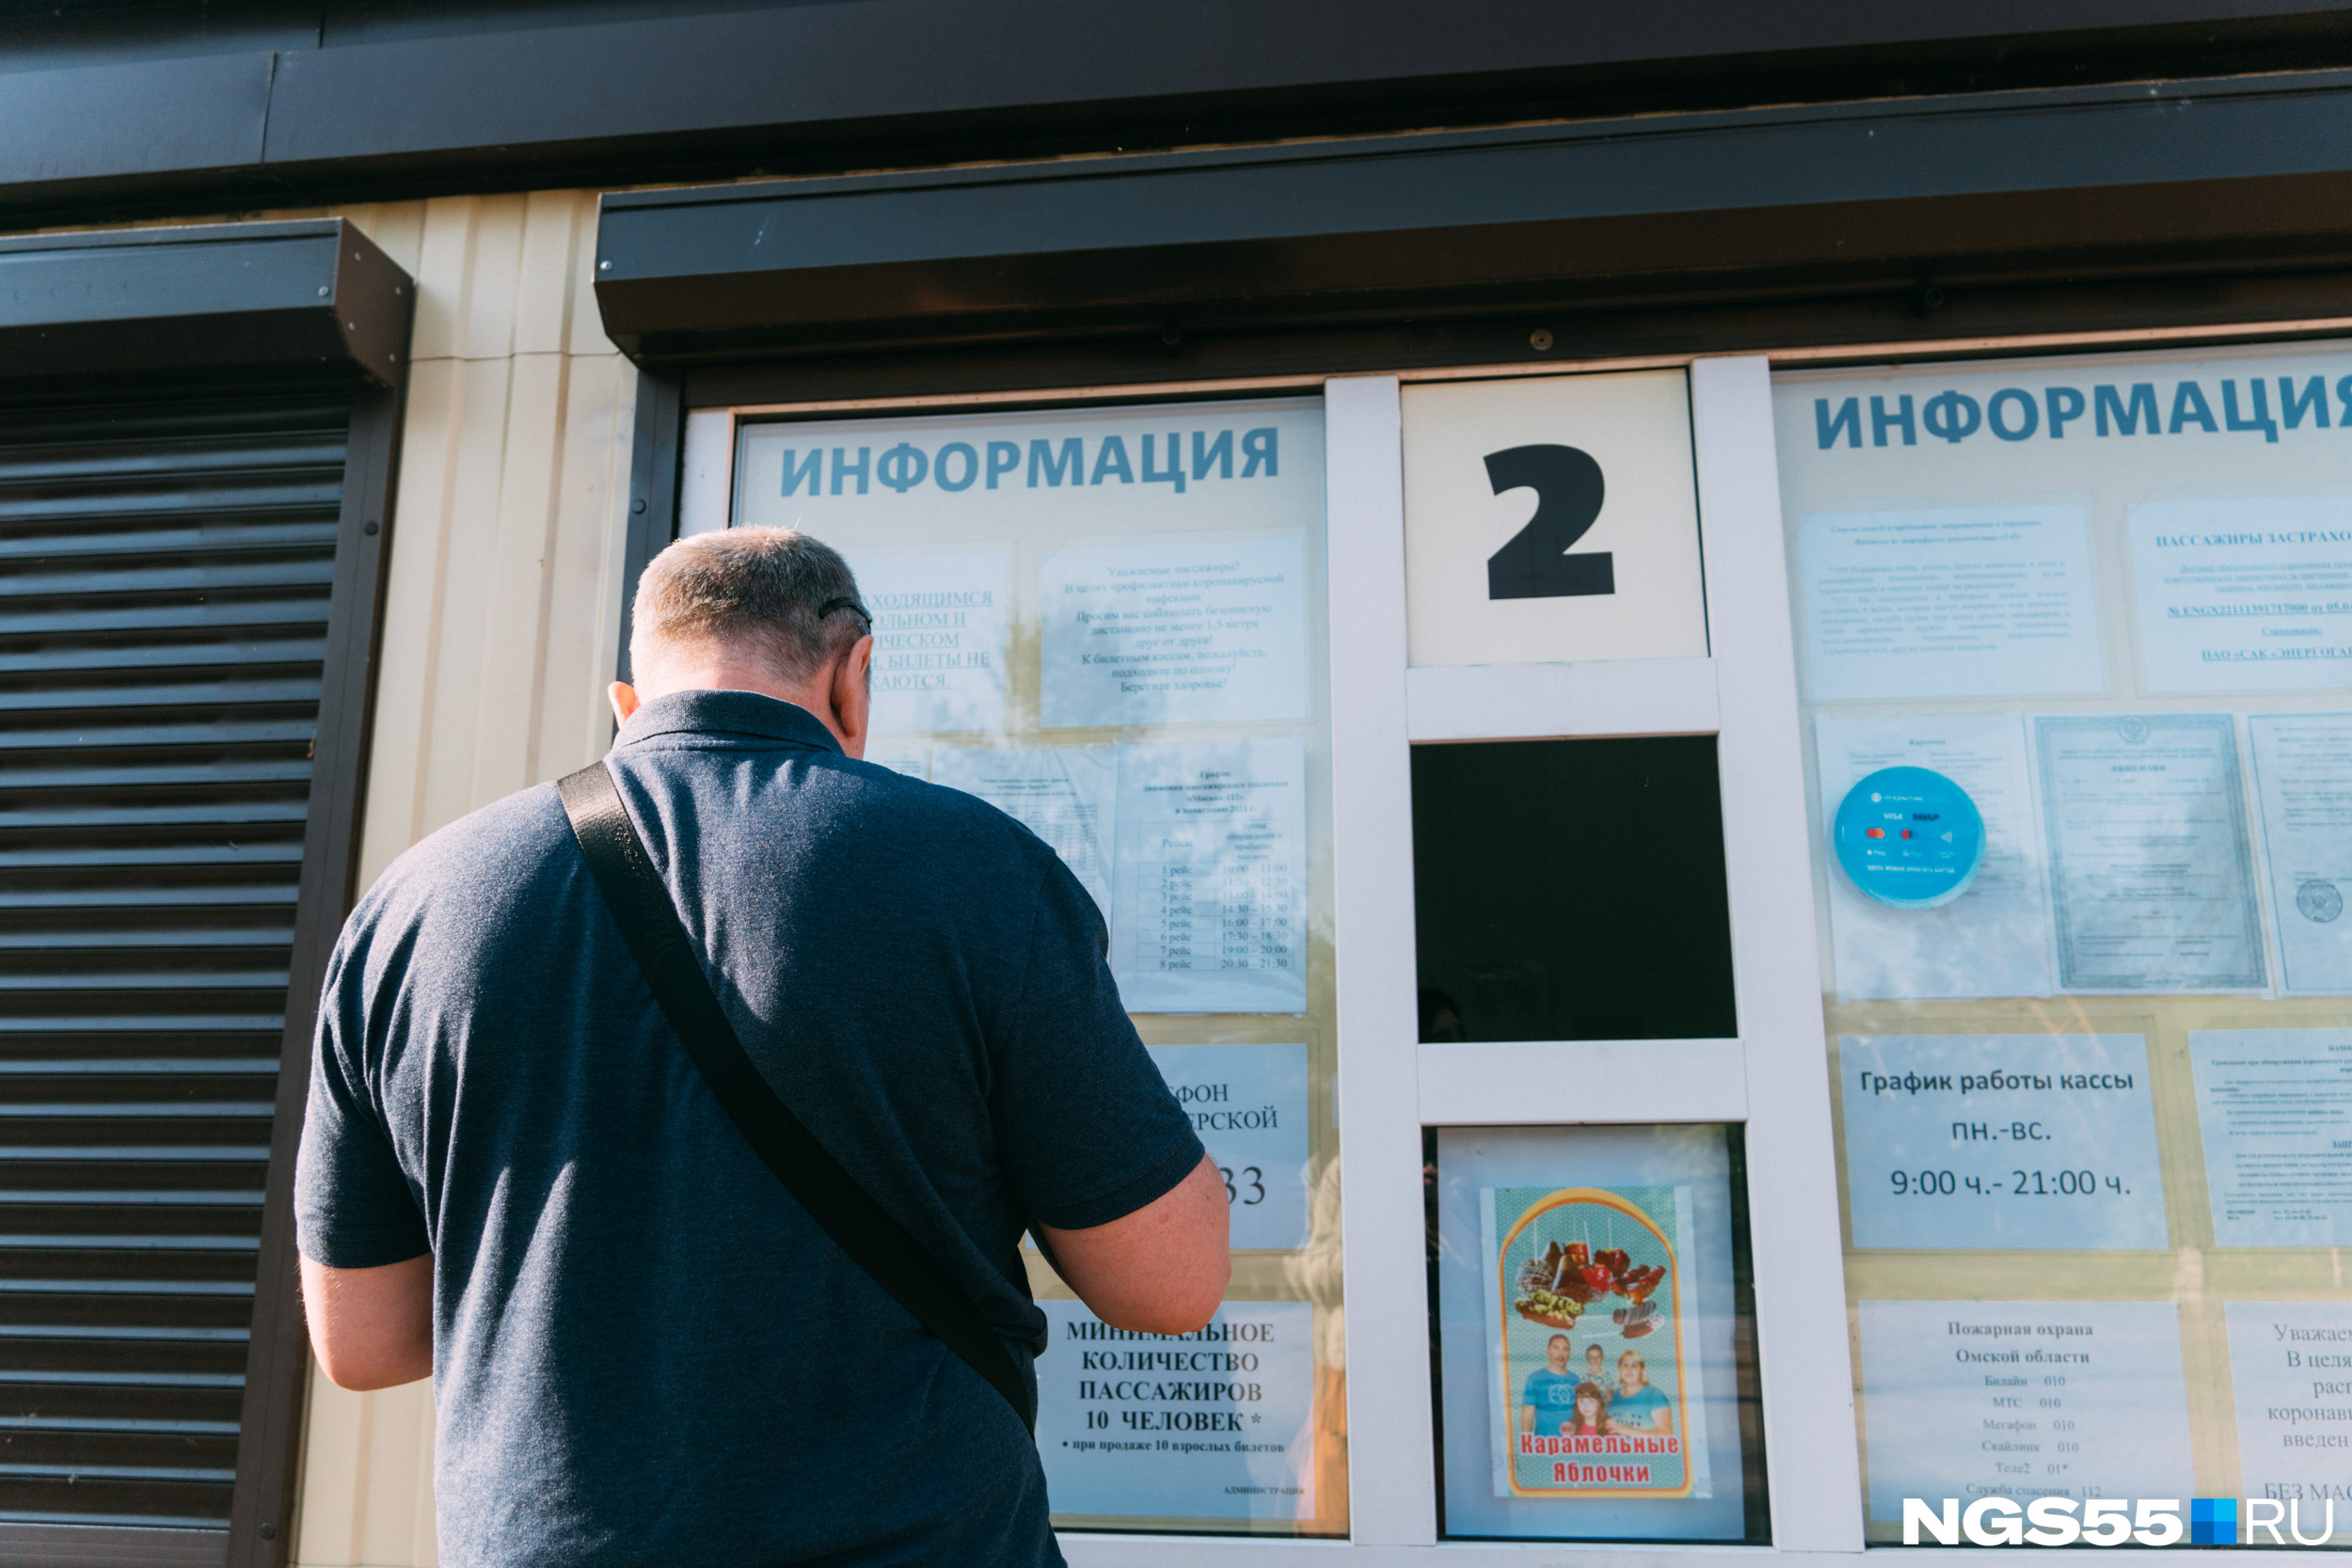 Билет на теплоход до Большеречья обойдется в 463 рубля. Но на пути есть и промежуточные станции, до них билеты стоят дешевле